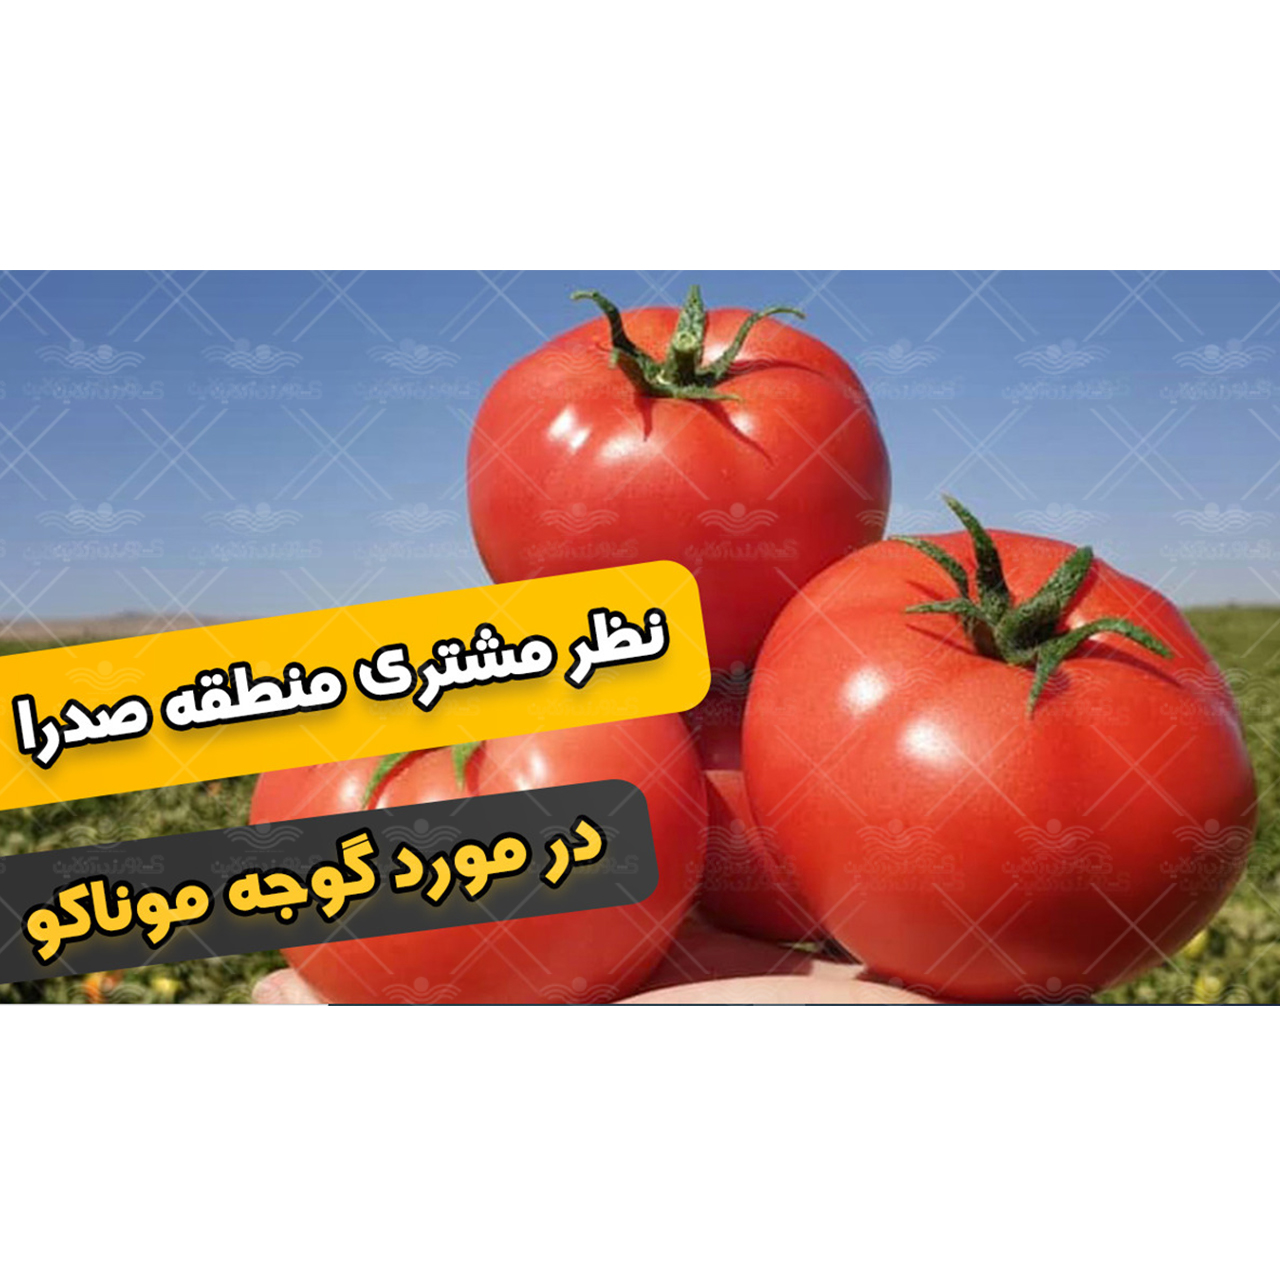 نظر مشتری در مورد بذر گوجه موناکو